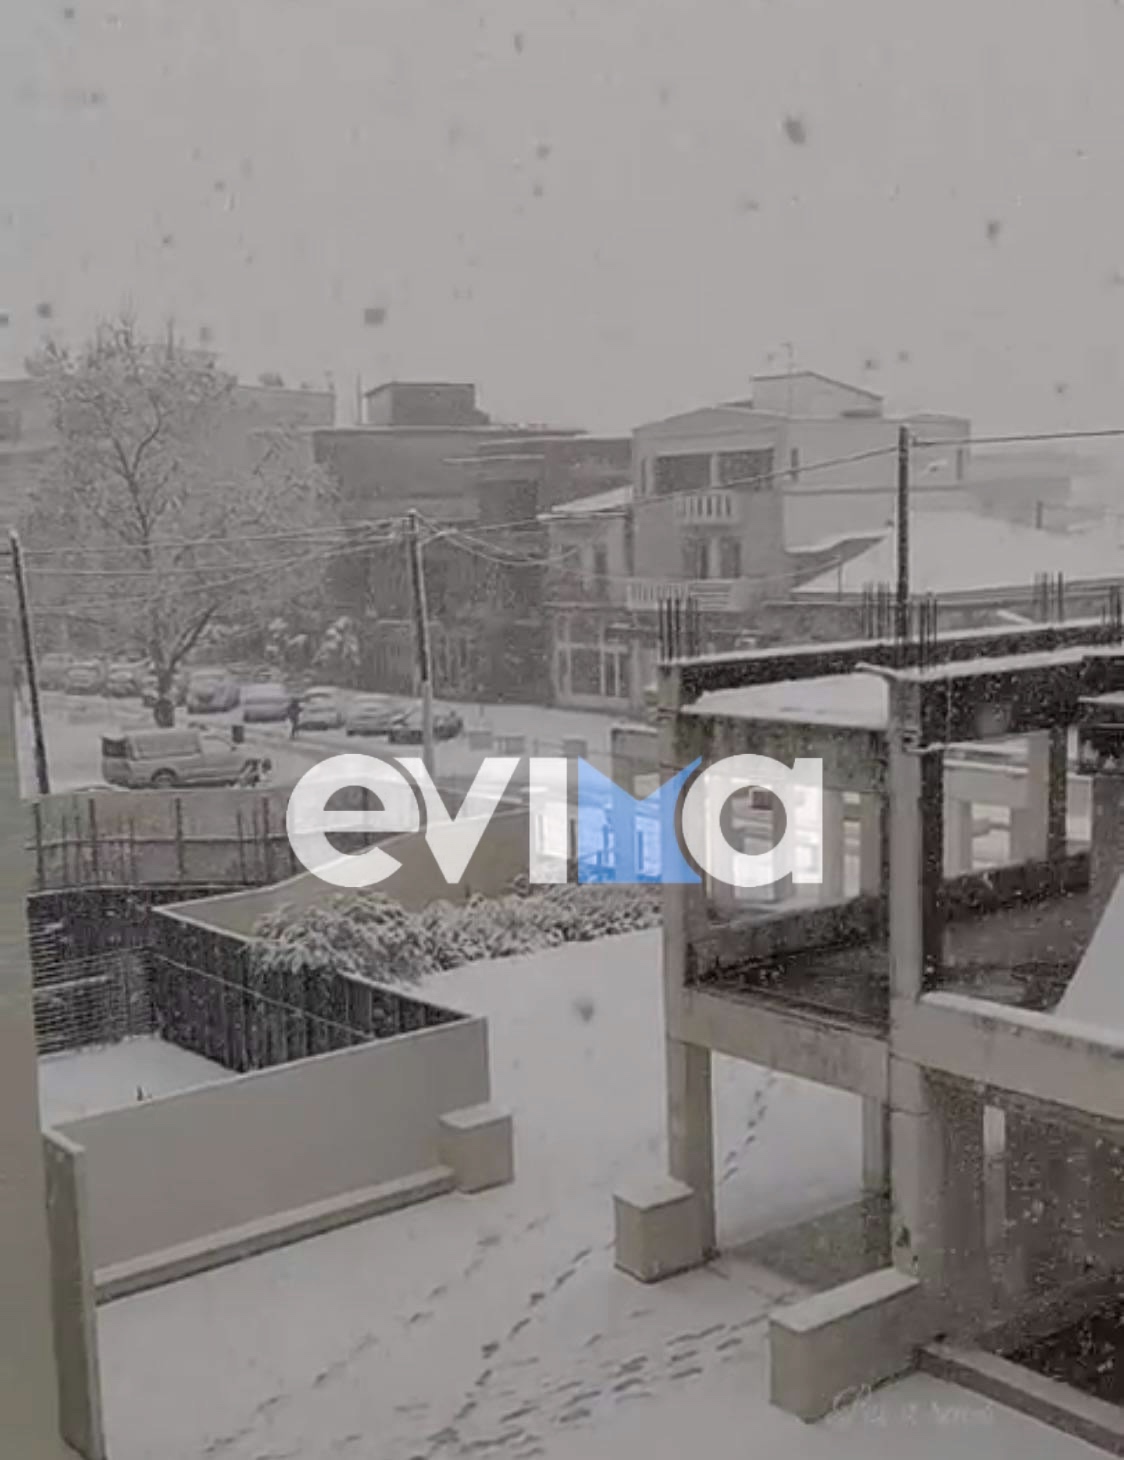 Χωρίς σοβαρά προβλήματα η επέλαση του χιονιά από τον δήμο Ιστιαίας-Αιδηψού